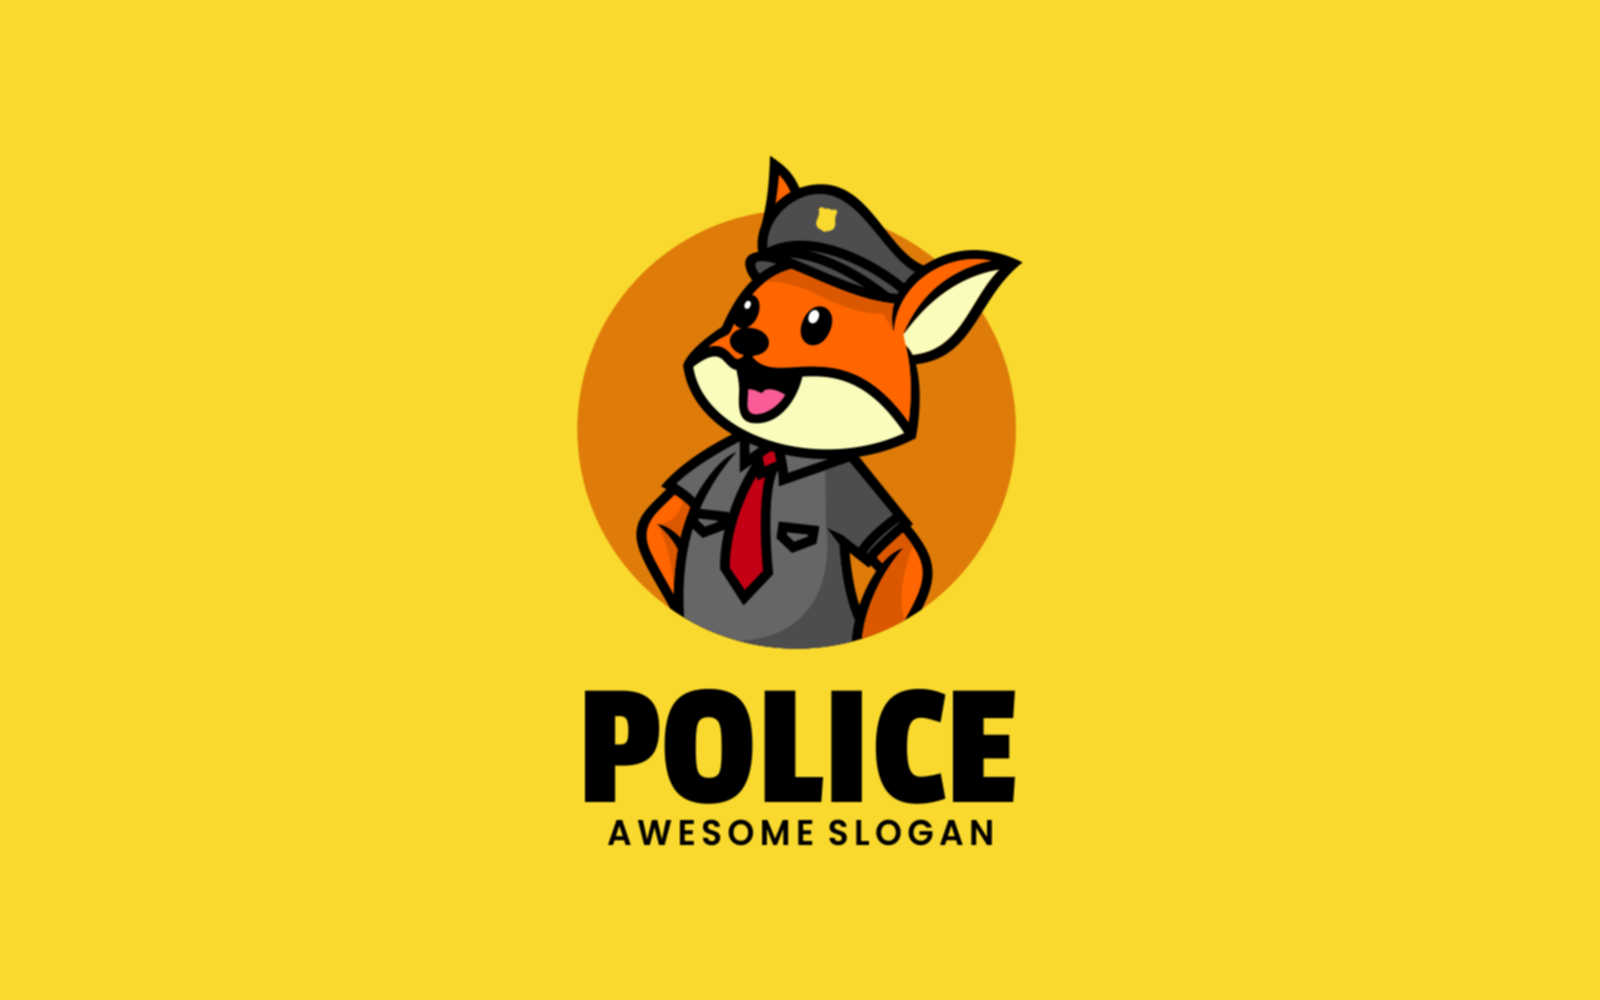 Police Fox Mascot Cartoon Logo